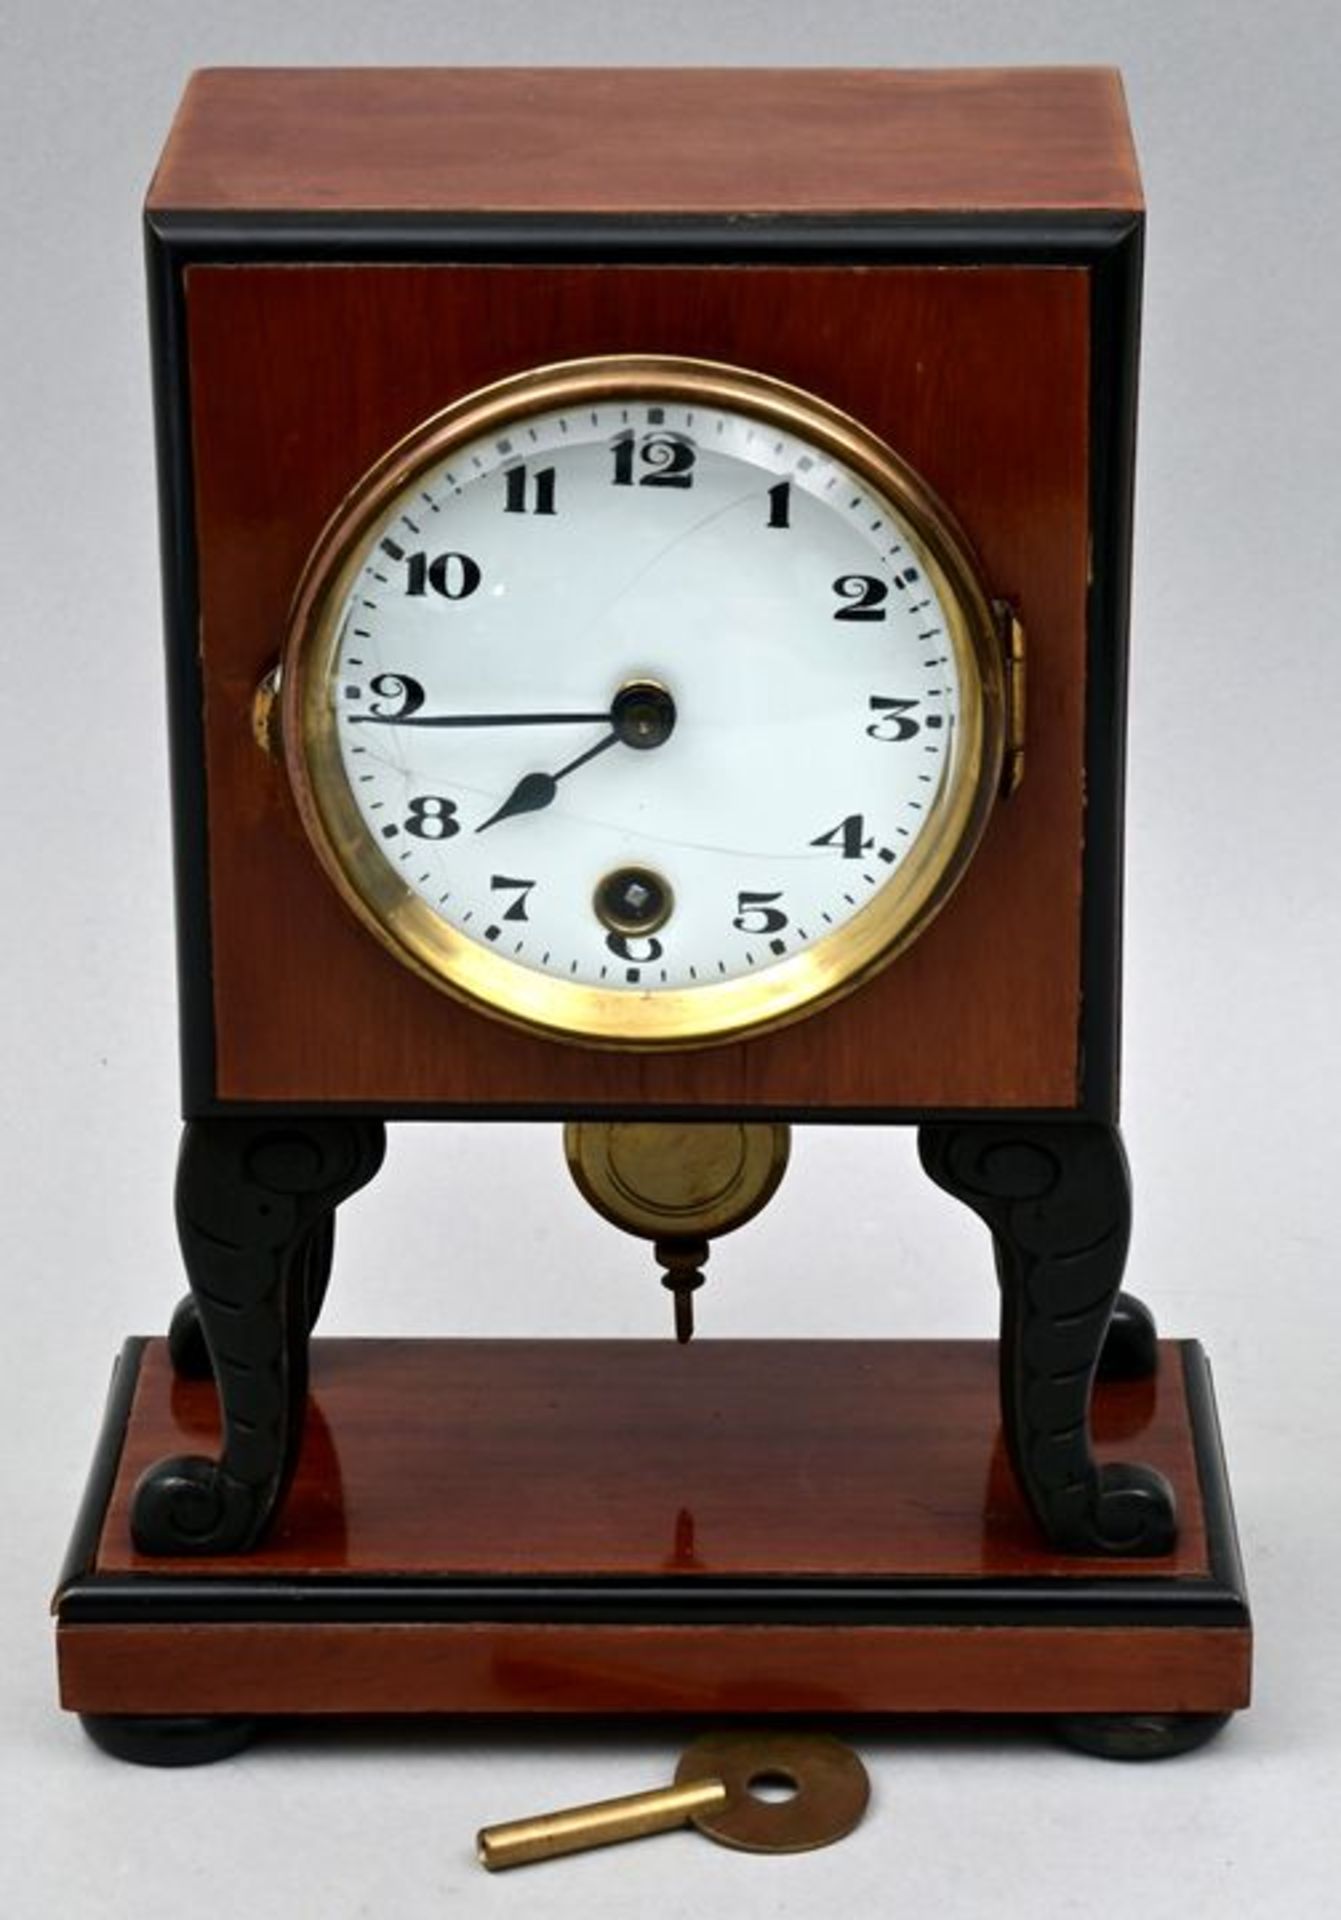 Tischuhr / Table clock